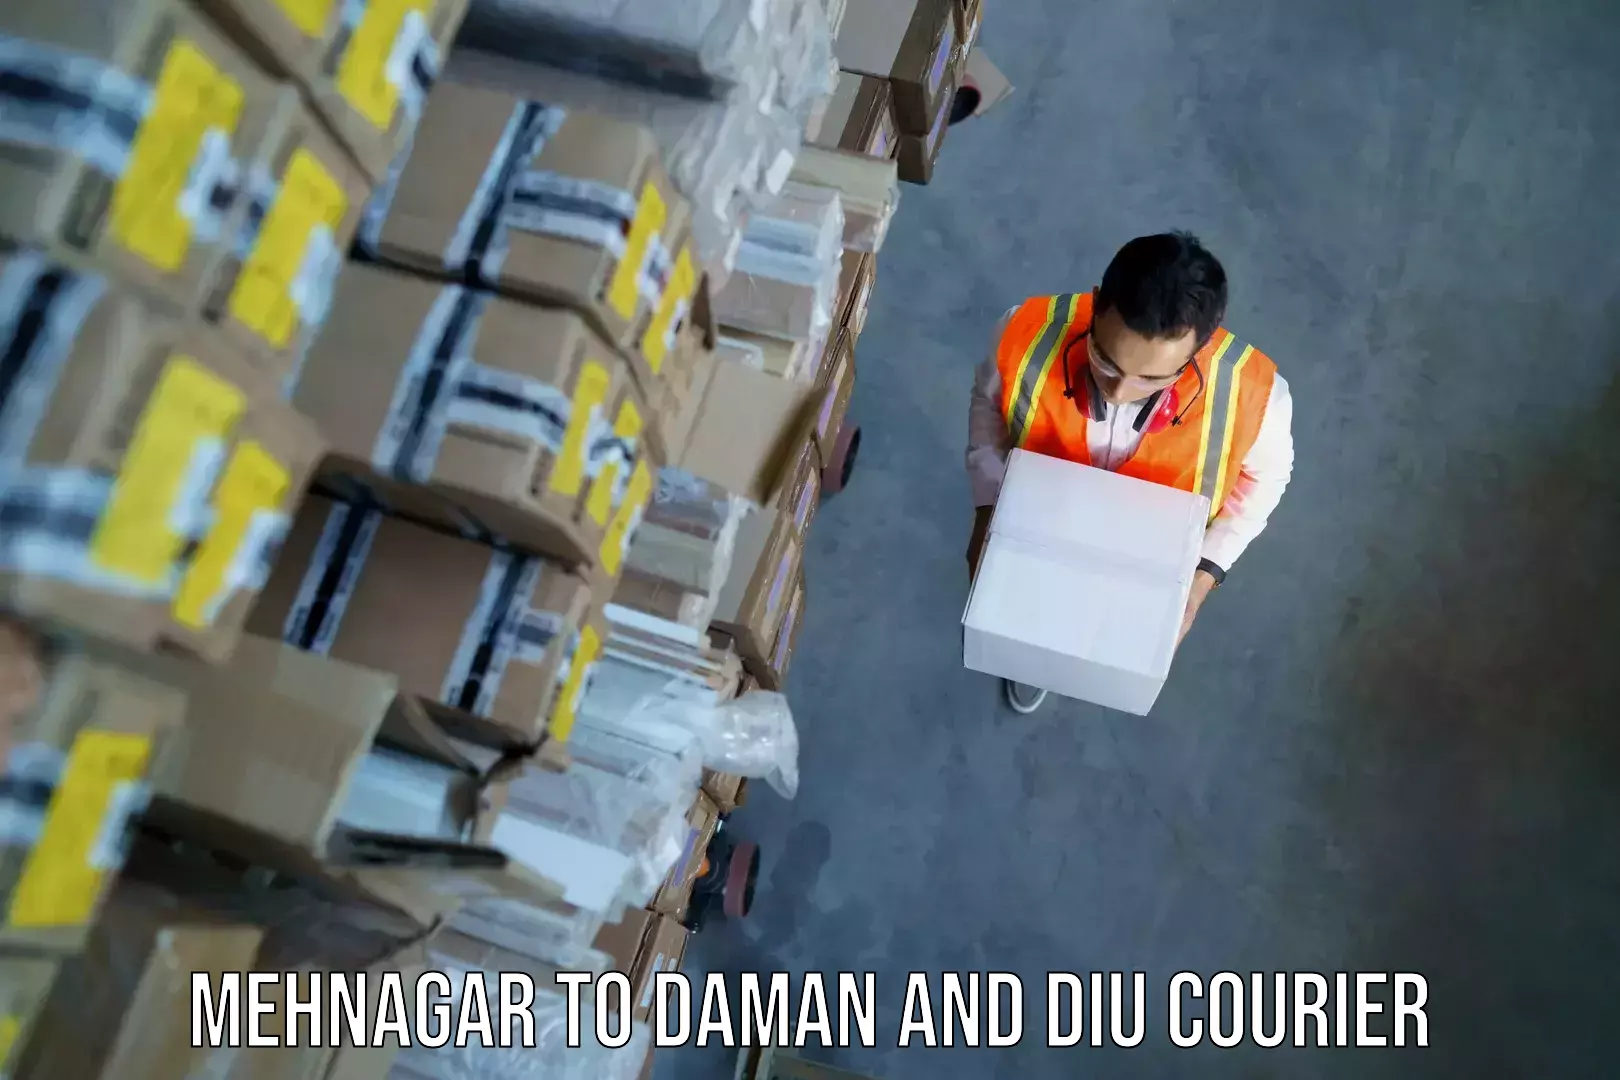 Luggage transit service Mehnagar to Daman and Diu